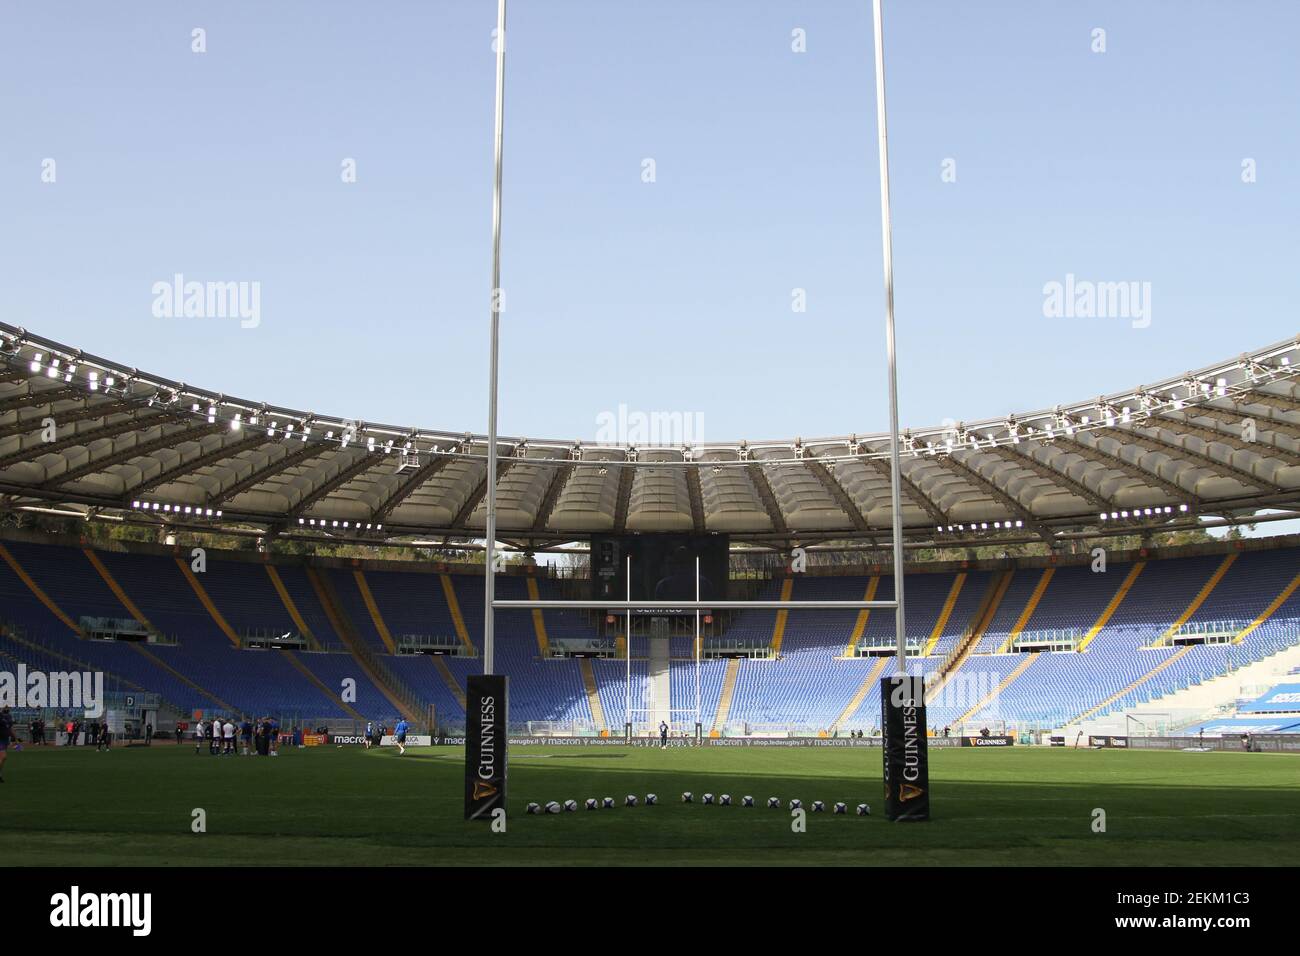 Stadio Olimpico de Rome pendant le match de rugby de championnat des six Nations 2021, ItalyV France le 6 janvier 2021 au Stadio Olimpico à Rome, Italie - Pho Banque D'Images